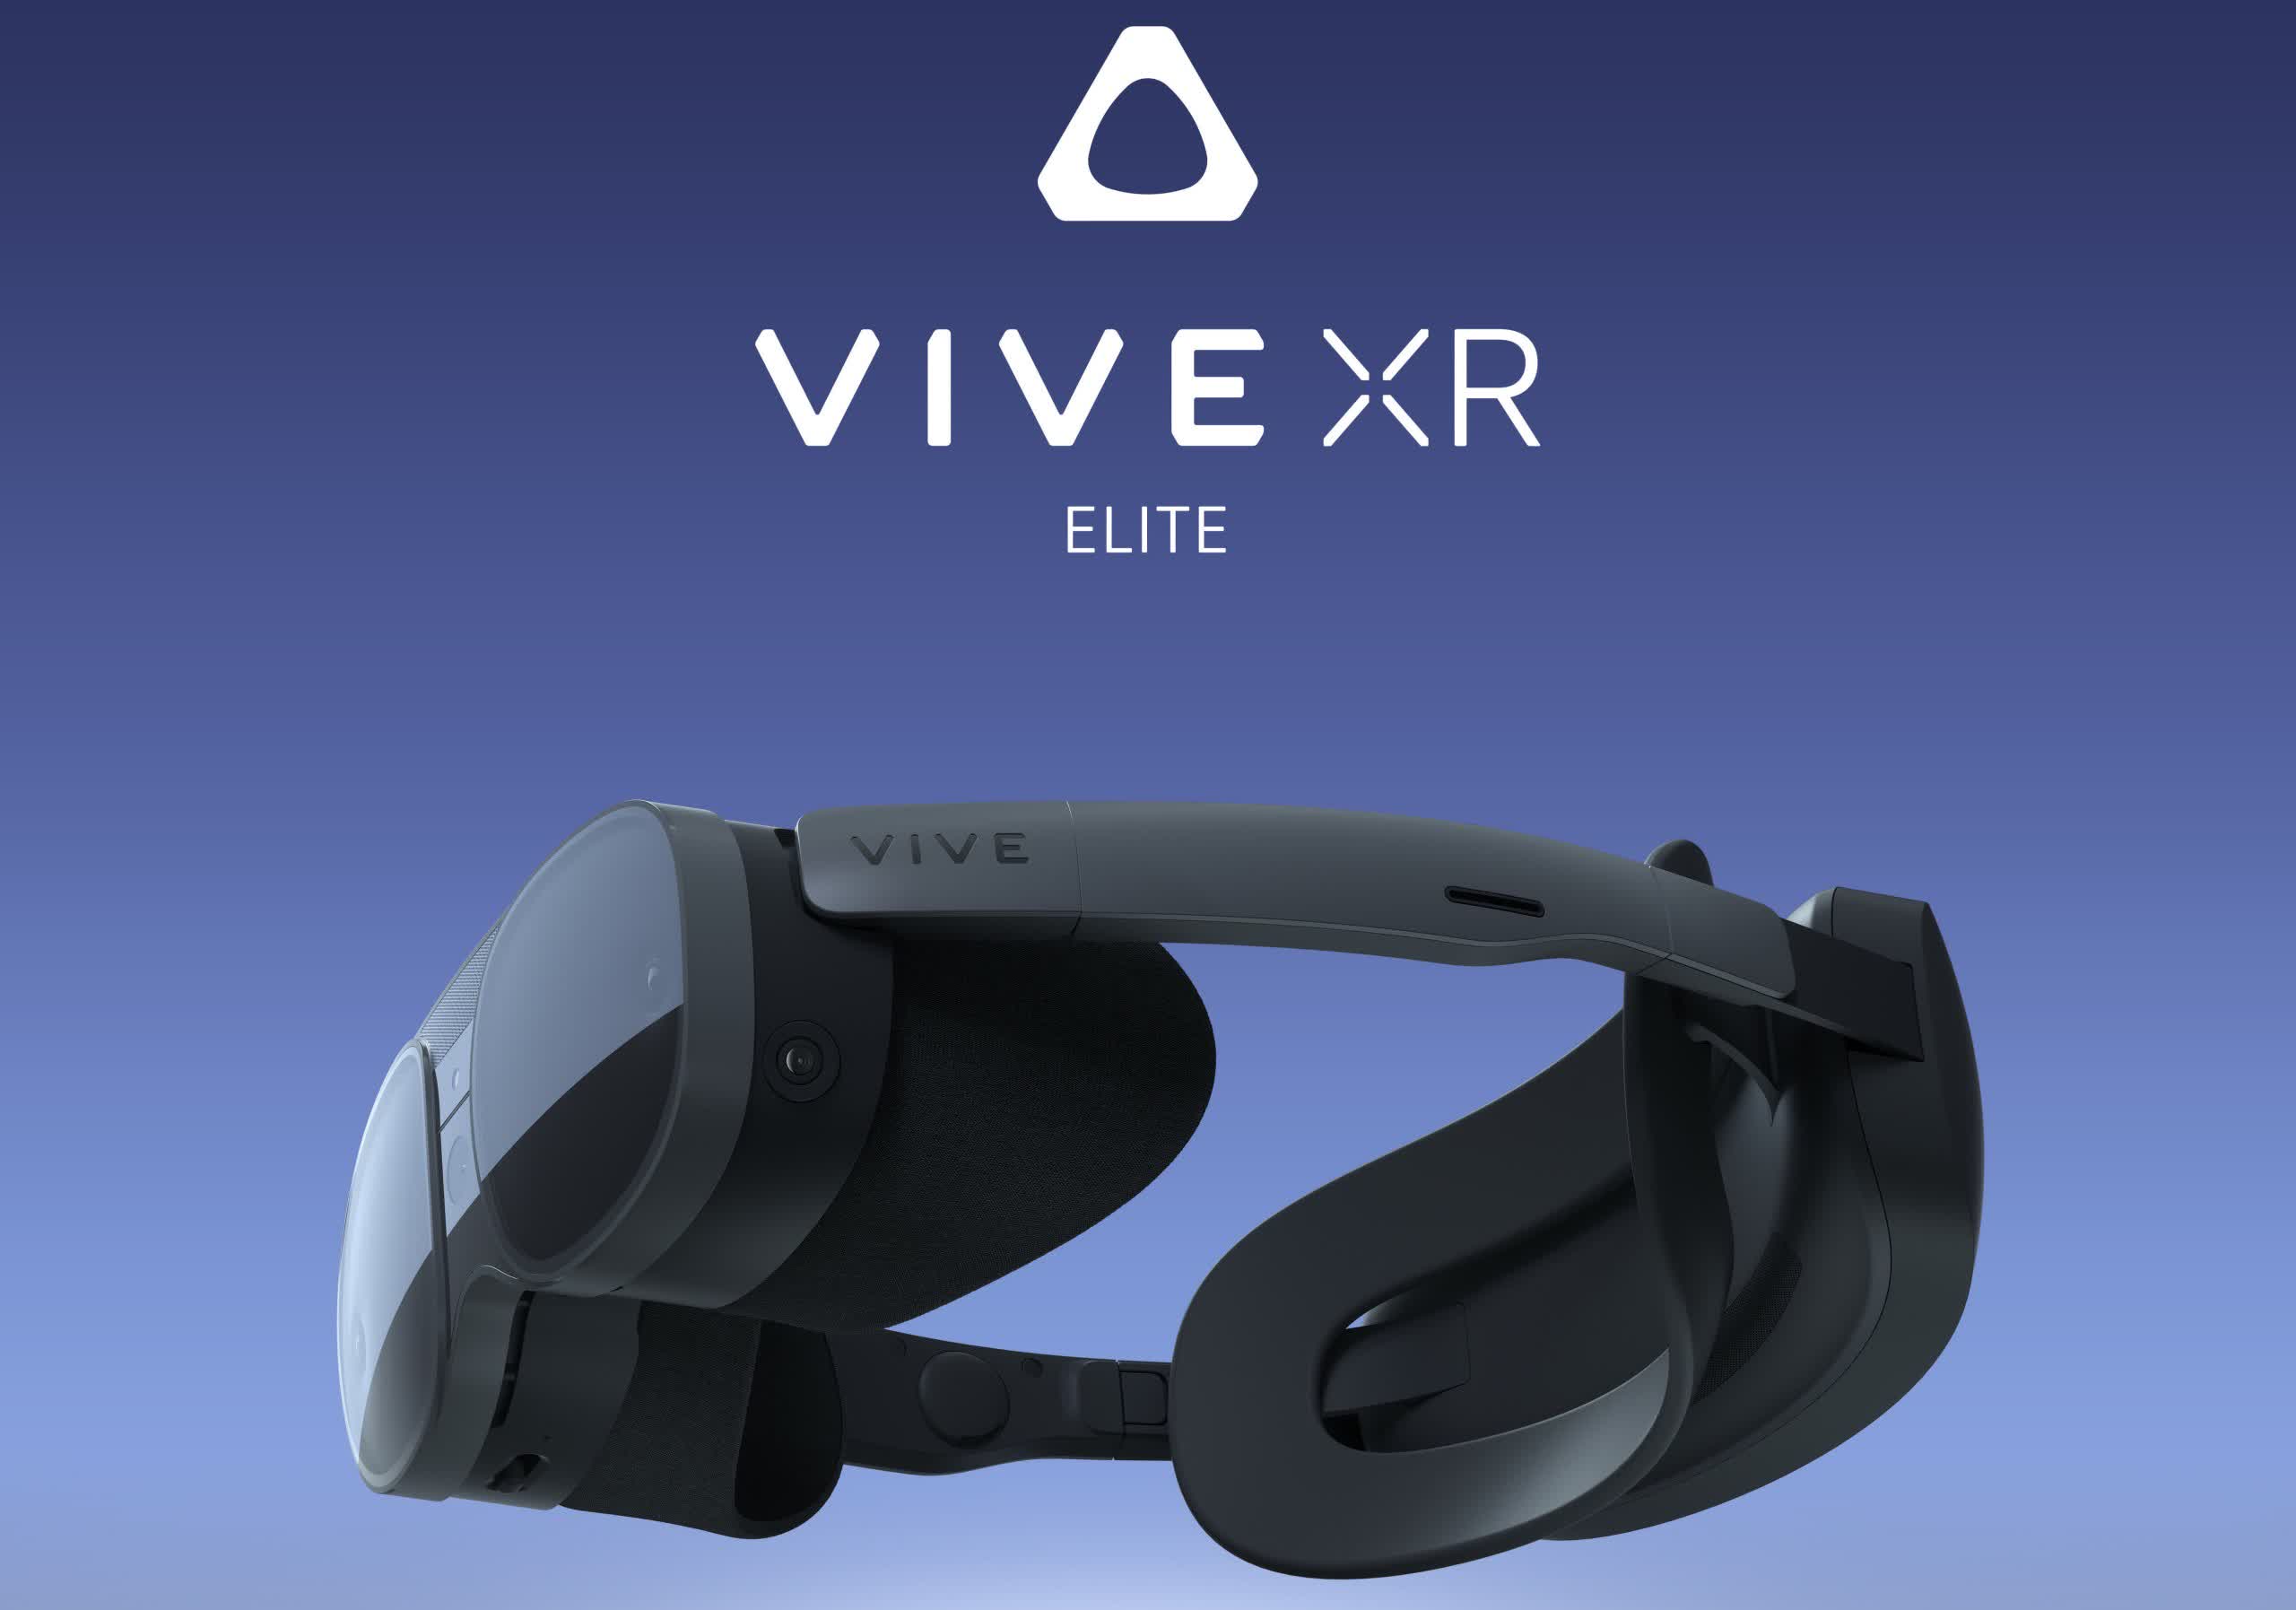 HTC unveils $1,100 lightweight Vive XR Elite VR/AR headset